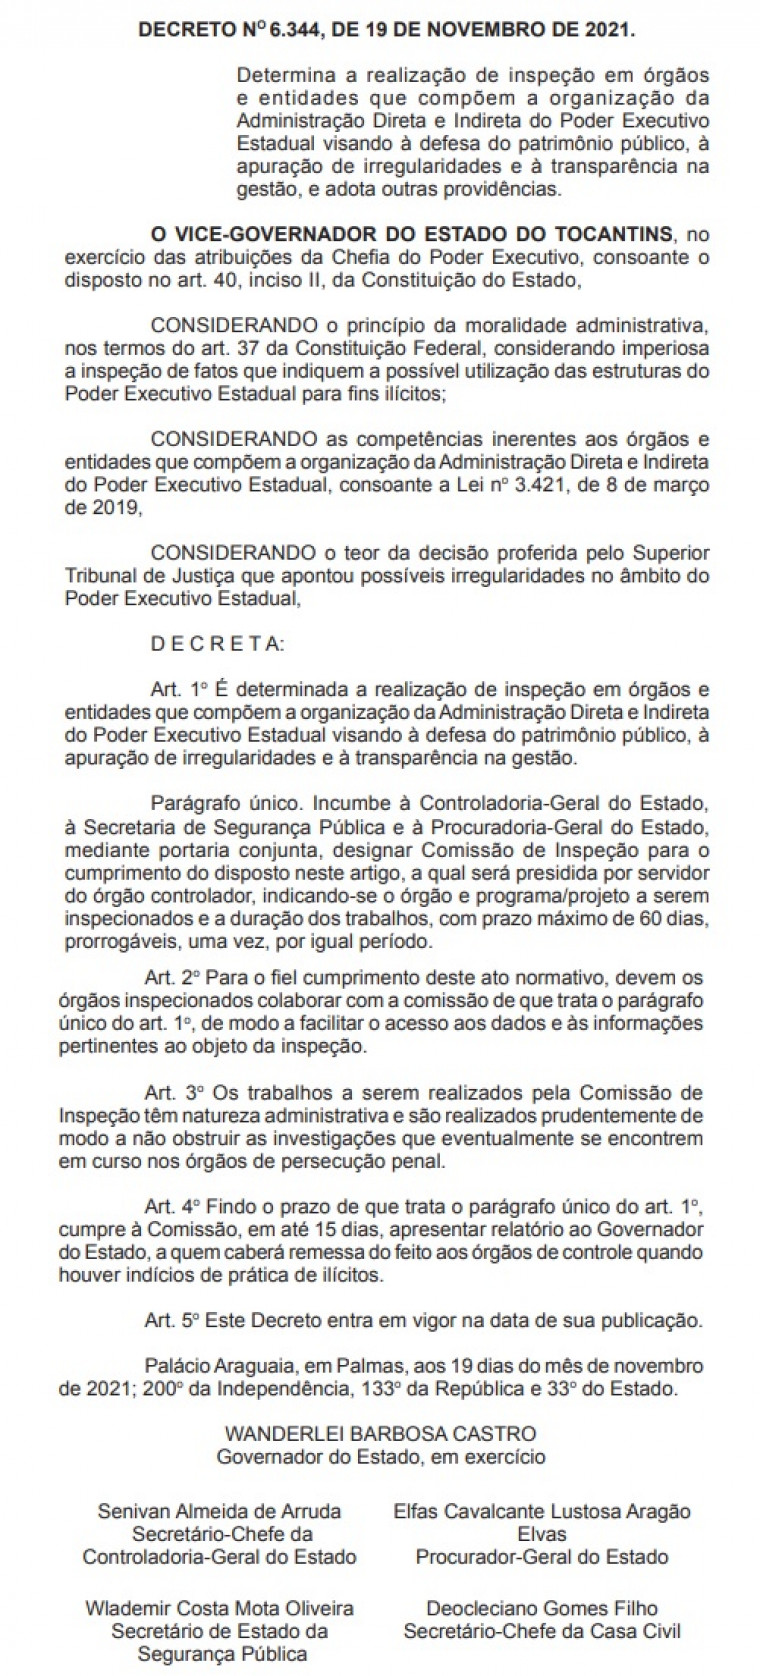 Decreto publicado no Diário Oficial do Estado